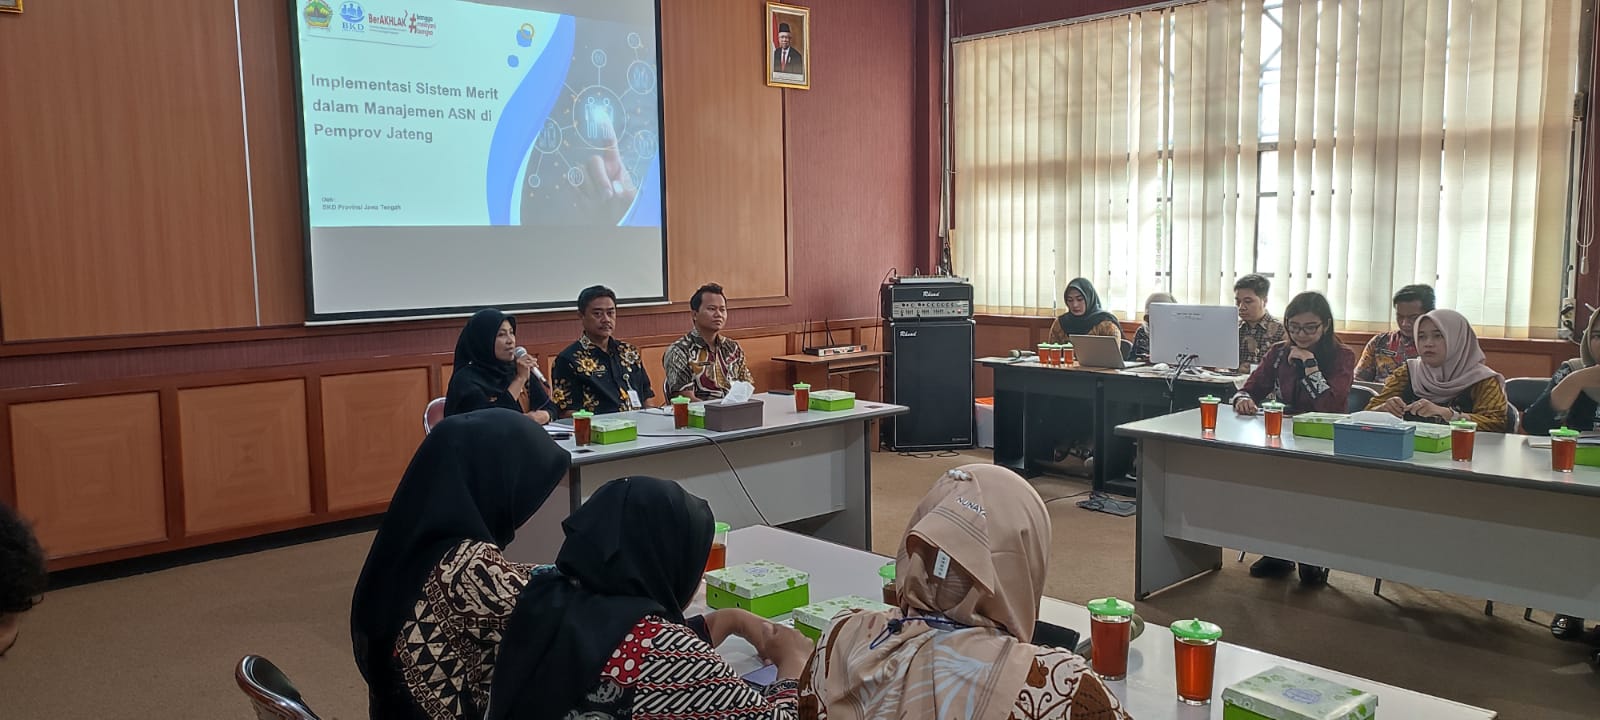 Focus Group Discussion Asistensi Penerapan Sistem Merit dan Talent Management bagi Pemerintah Kabupaten/Kota di Provinsi Jawa Tengah Tahun 2024